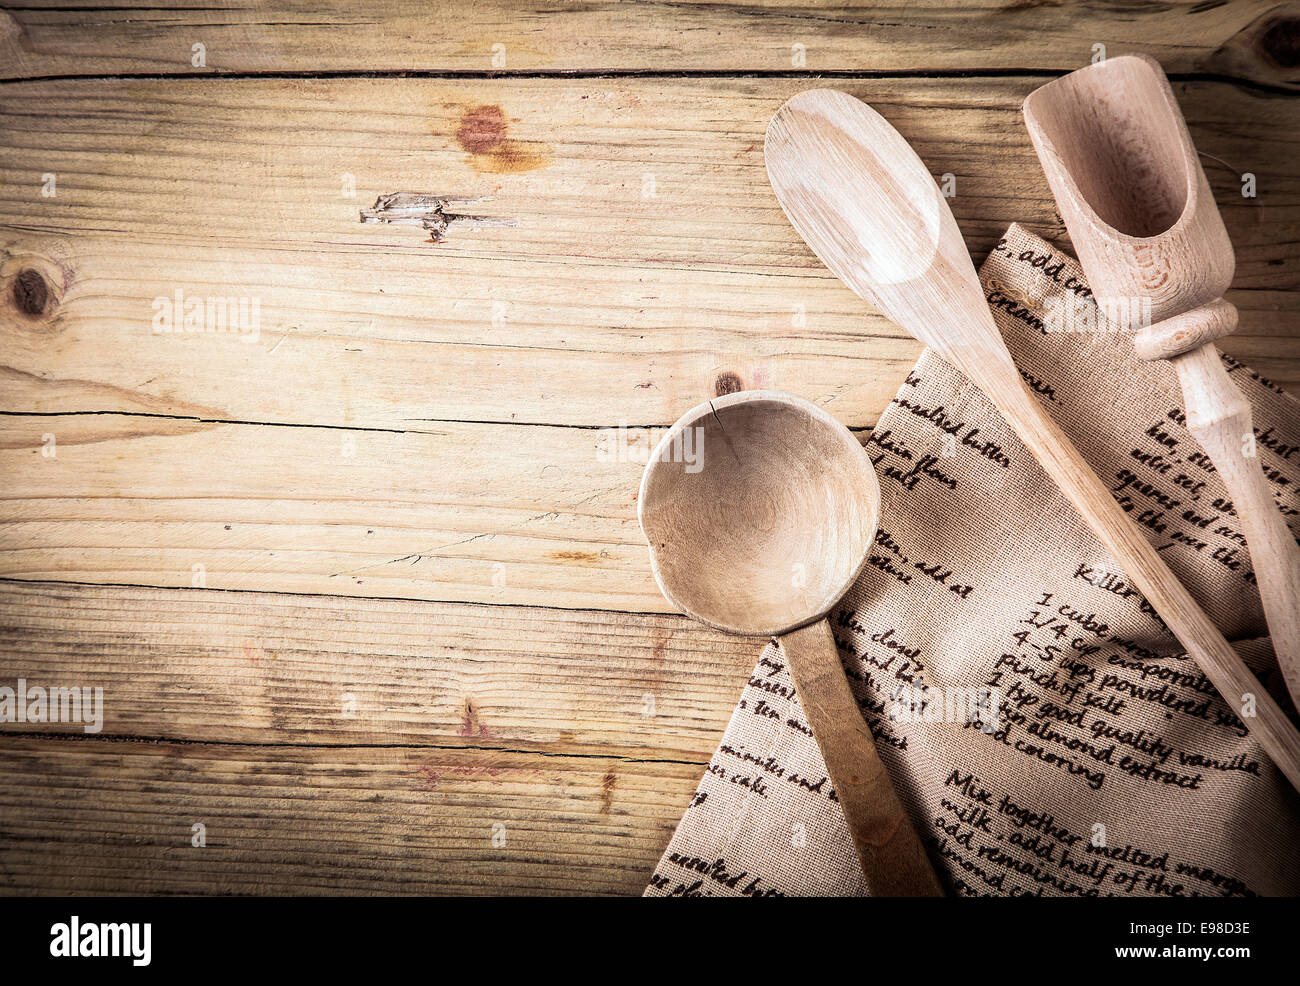 Rustico di utensili di cottura con un cucchiaio di legno, siviera e scoop giacente su un panno piegato con una ricetta su di esso su un vecchio incrinato tavolo in legno con la vignettatura e copyspace Foto Stock